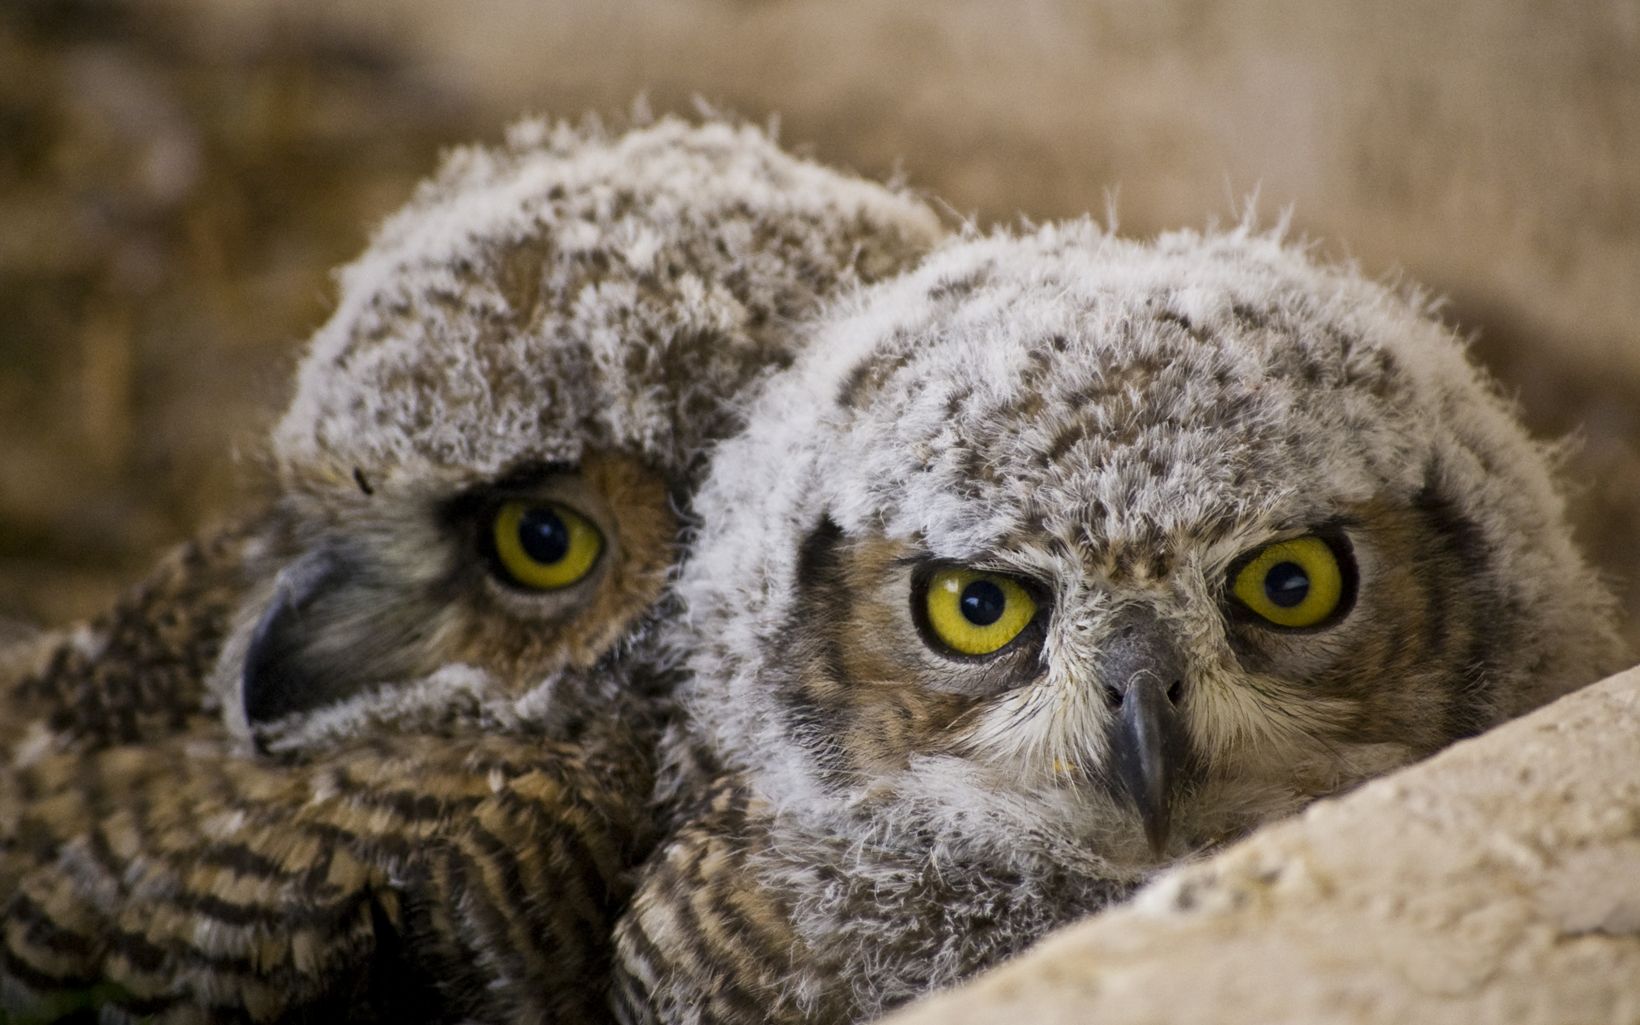 Great horned owl chicks